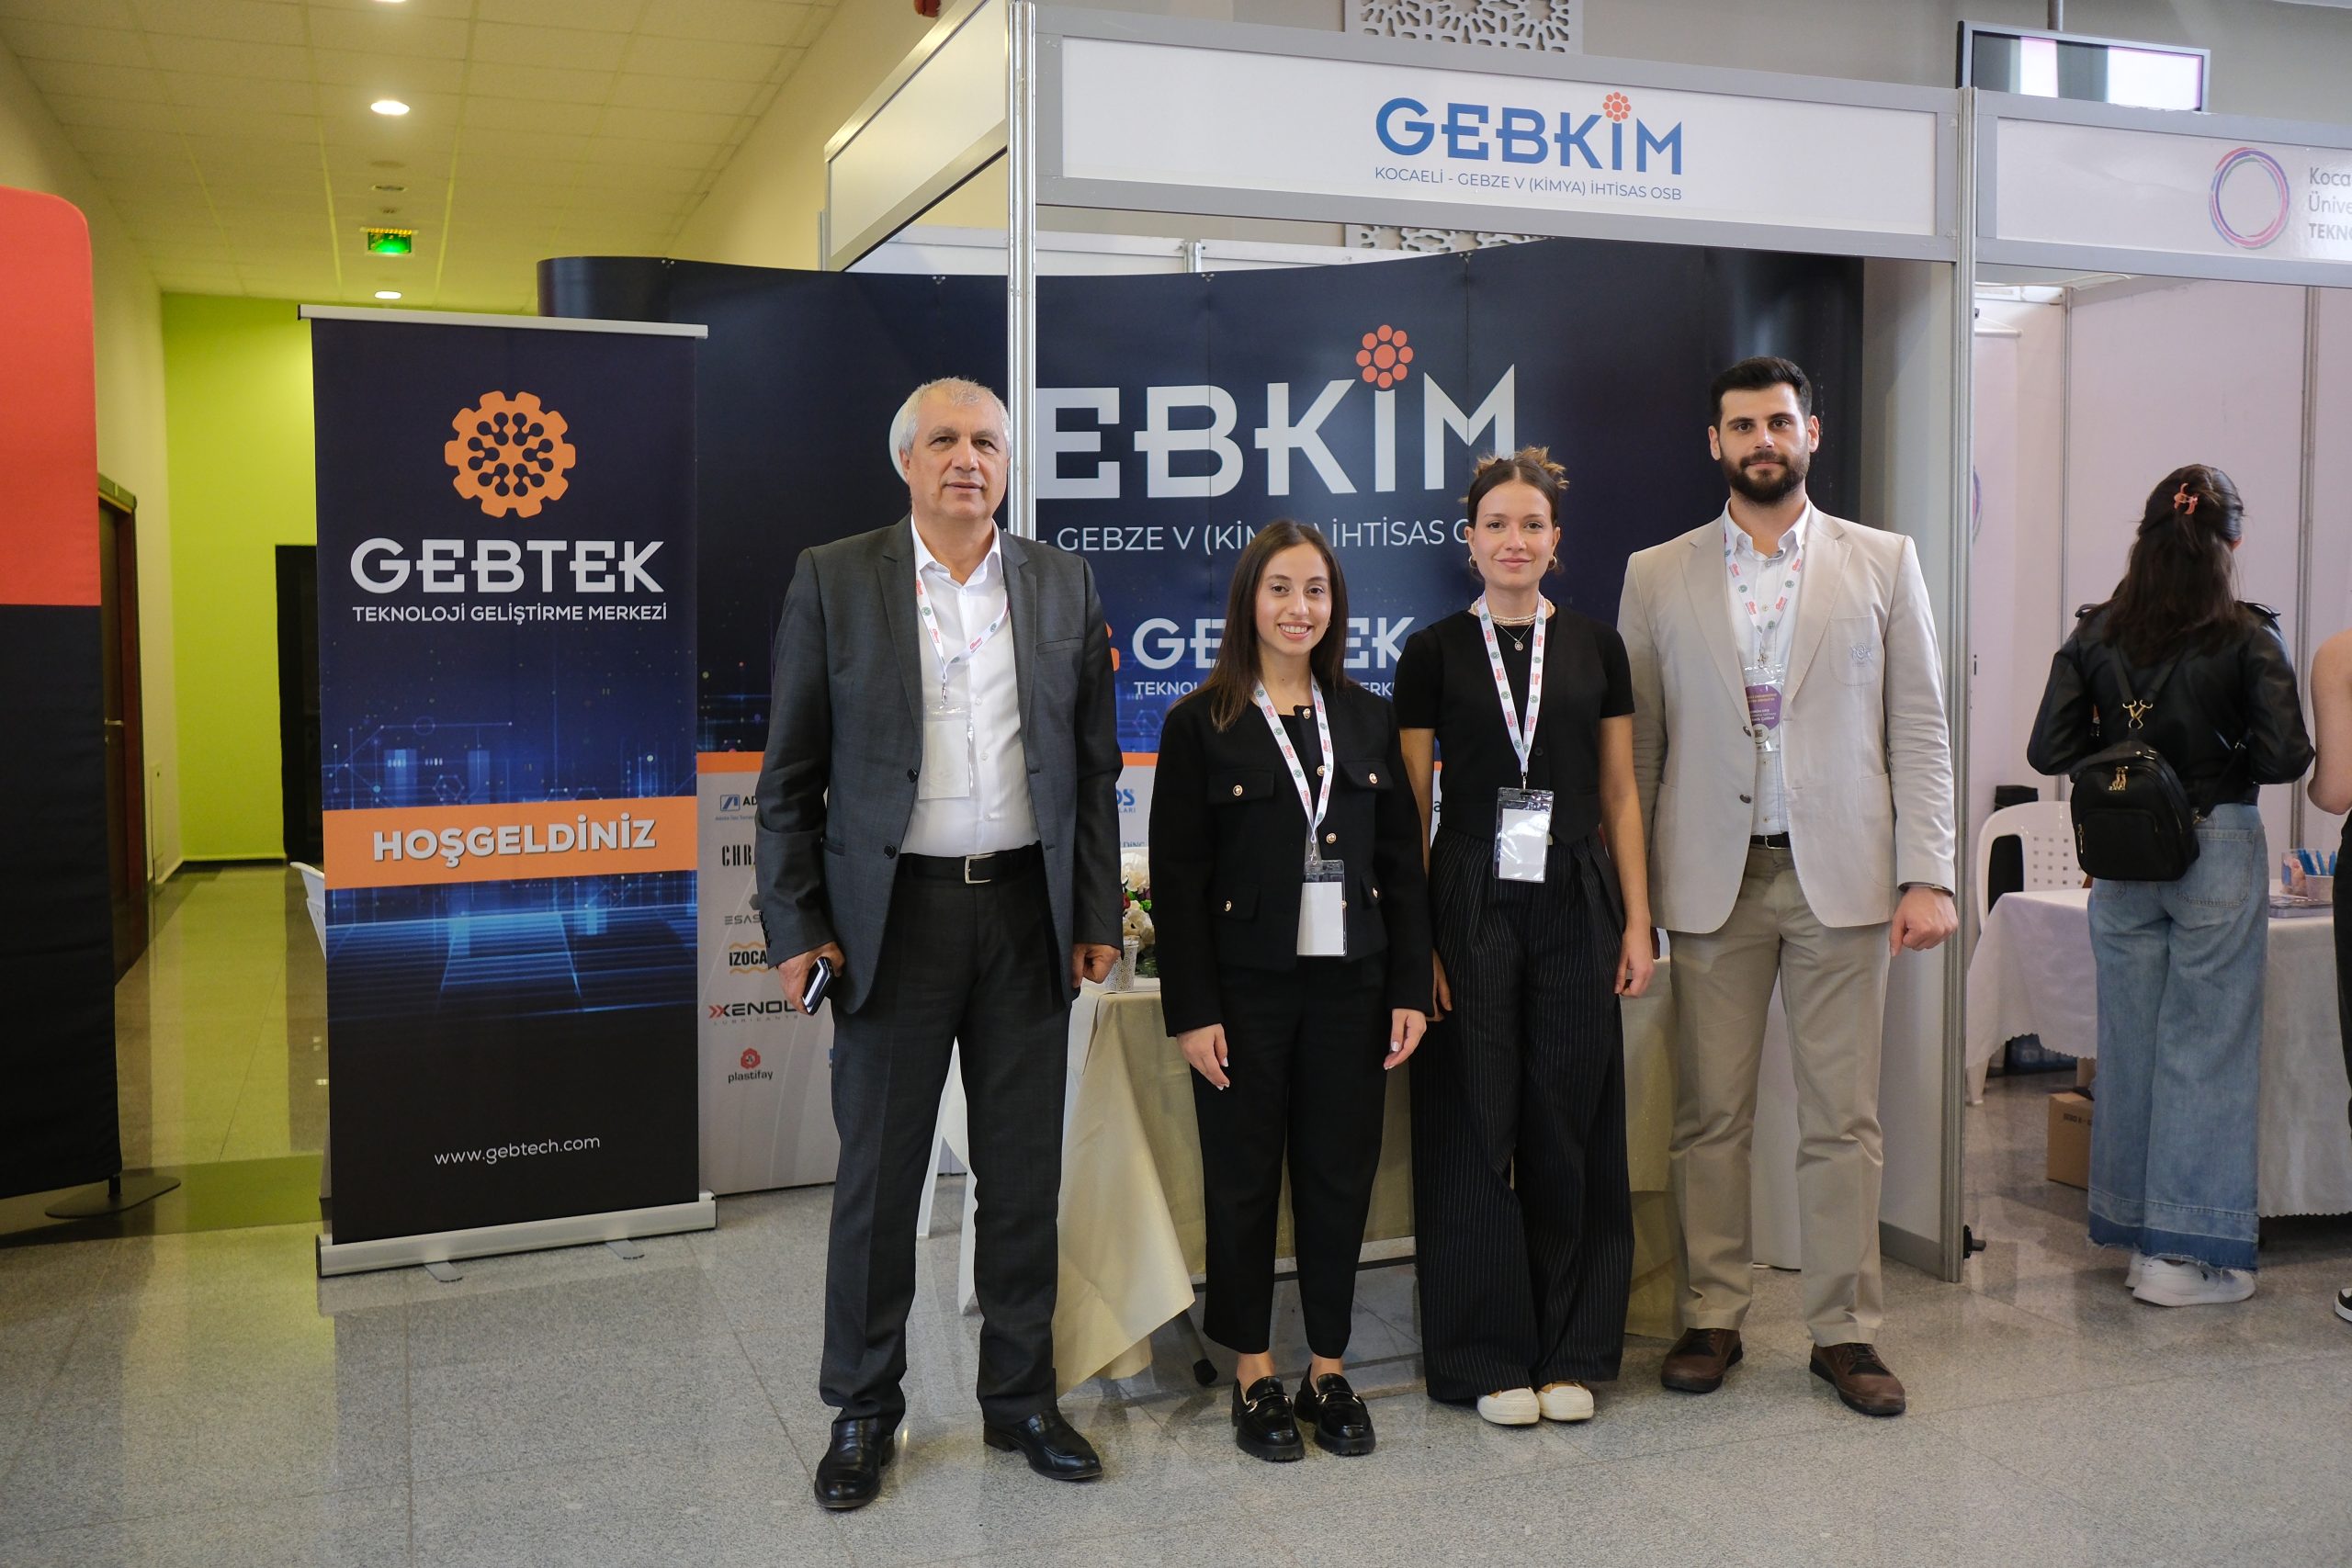 Kocaeli Üniversitesi’nin Düzenlediği Kariyer Zirvesi’23’e GEBKİM OSB Teknoloji Geliştirme Merkezimiz GEBTEK ile Katılım Sağladık